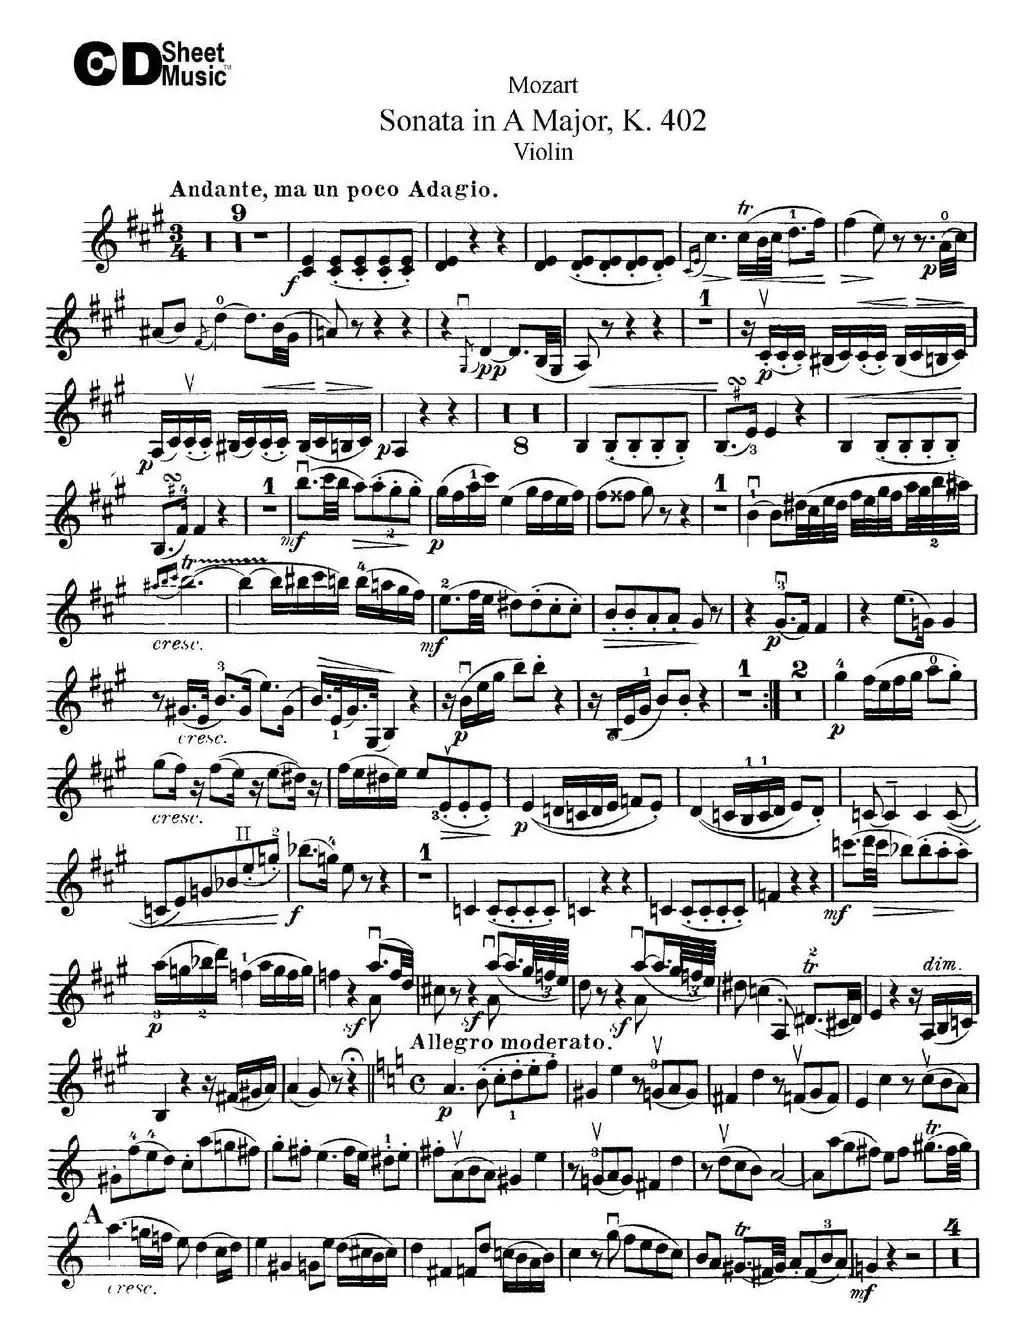 Violin Sonata in A Major K.402